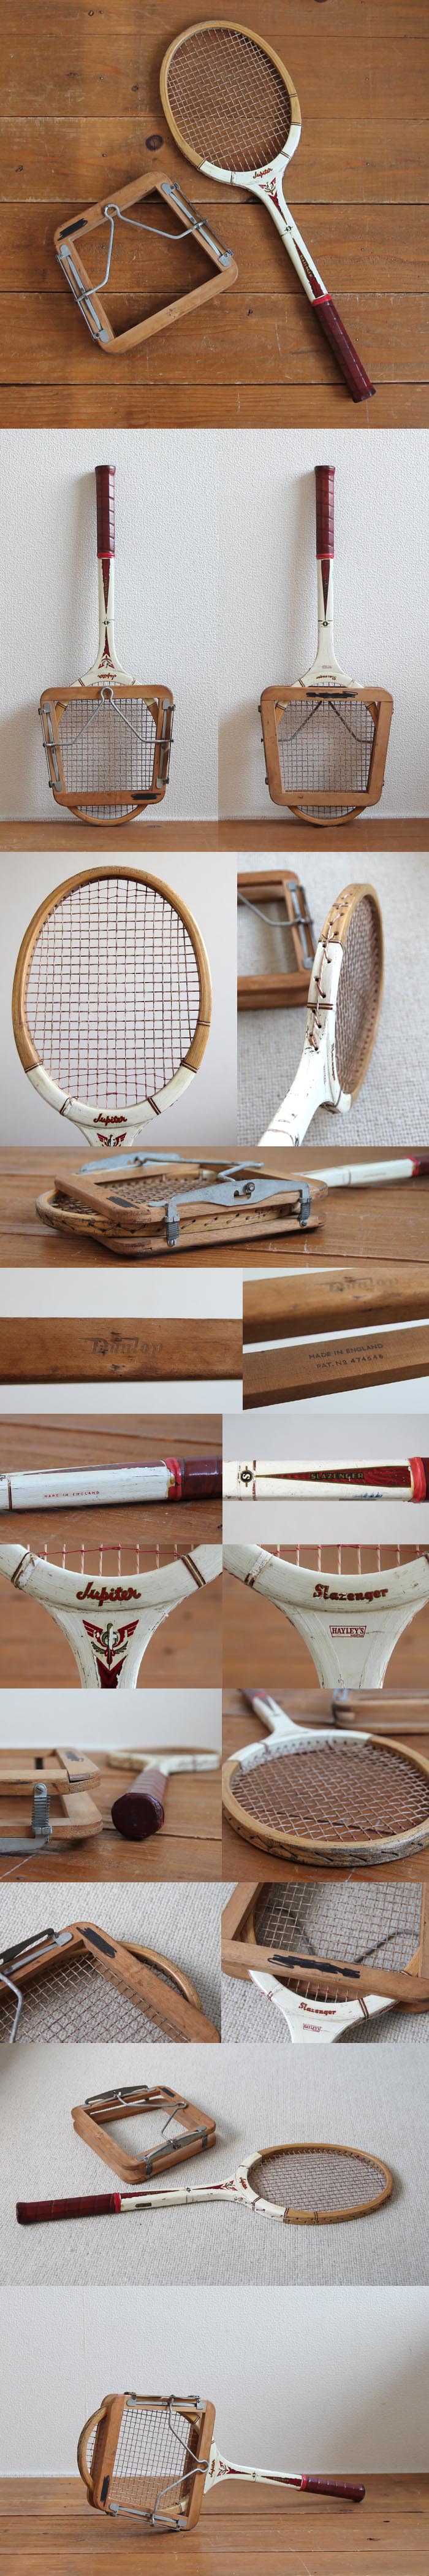 イギリス ビンテージ 木製テニスラケット/ラケットプレス付き/インテリア/Dunlop【雰囲気つくりのディスプレイに】N-704